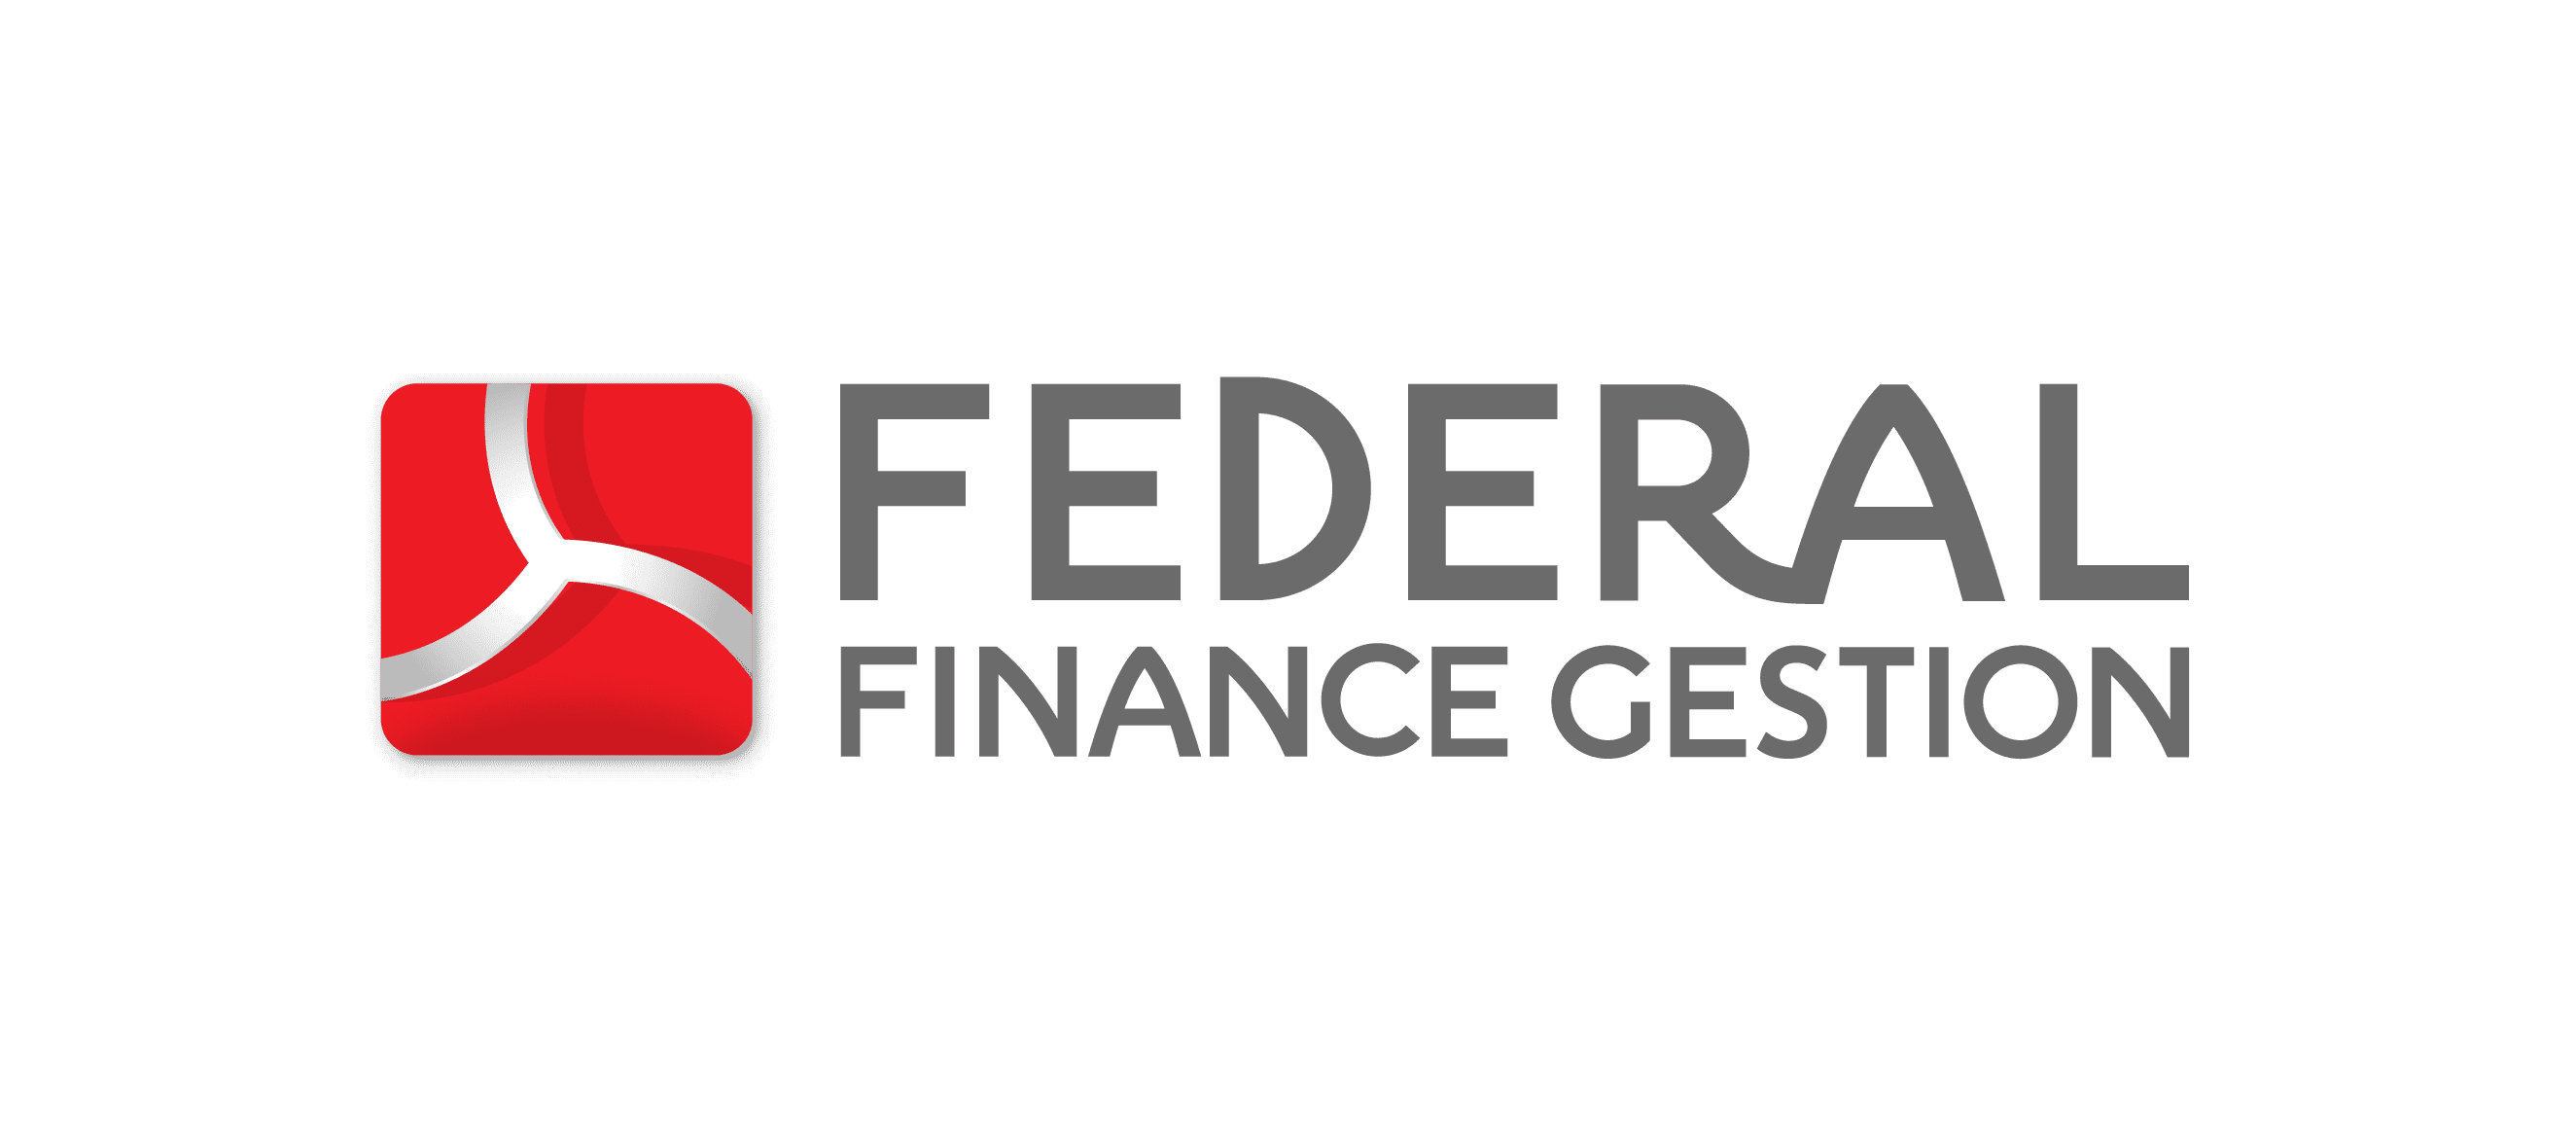 Logo - FEDERAL FINANCE GESTION